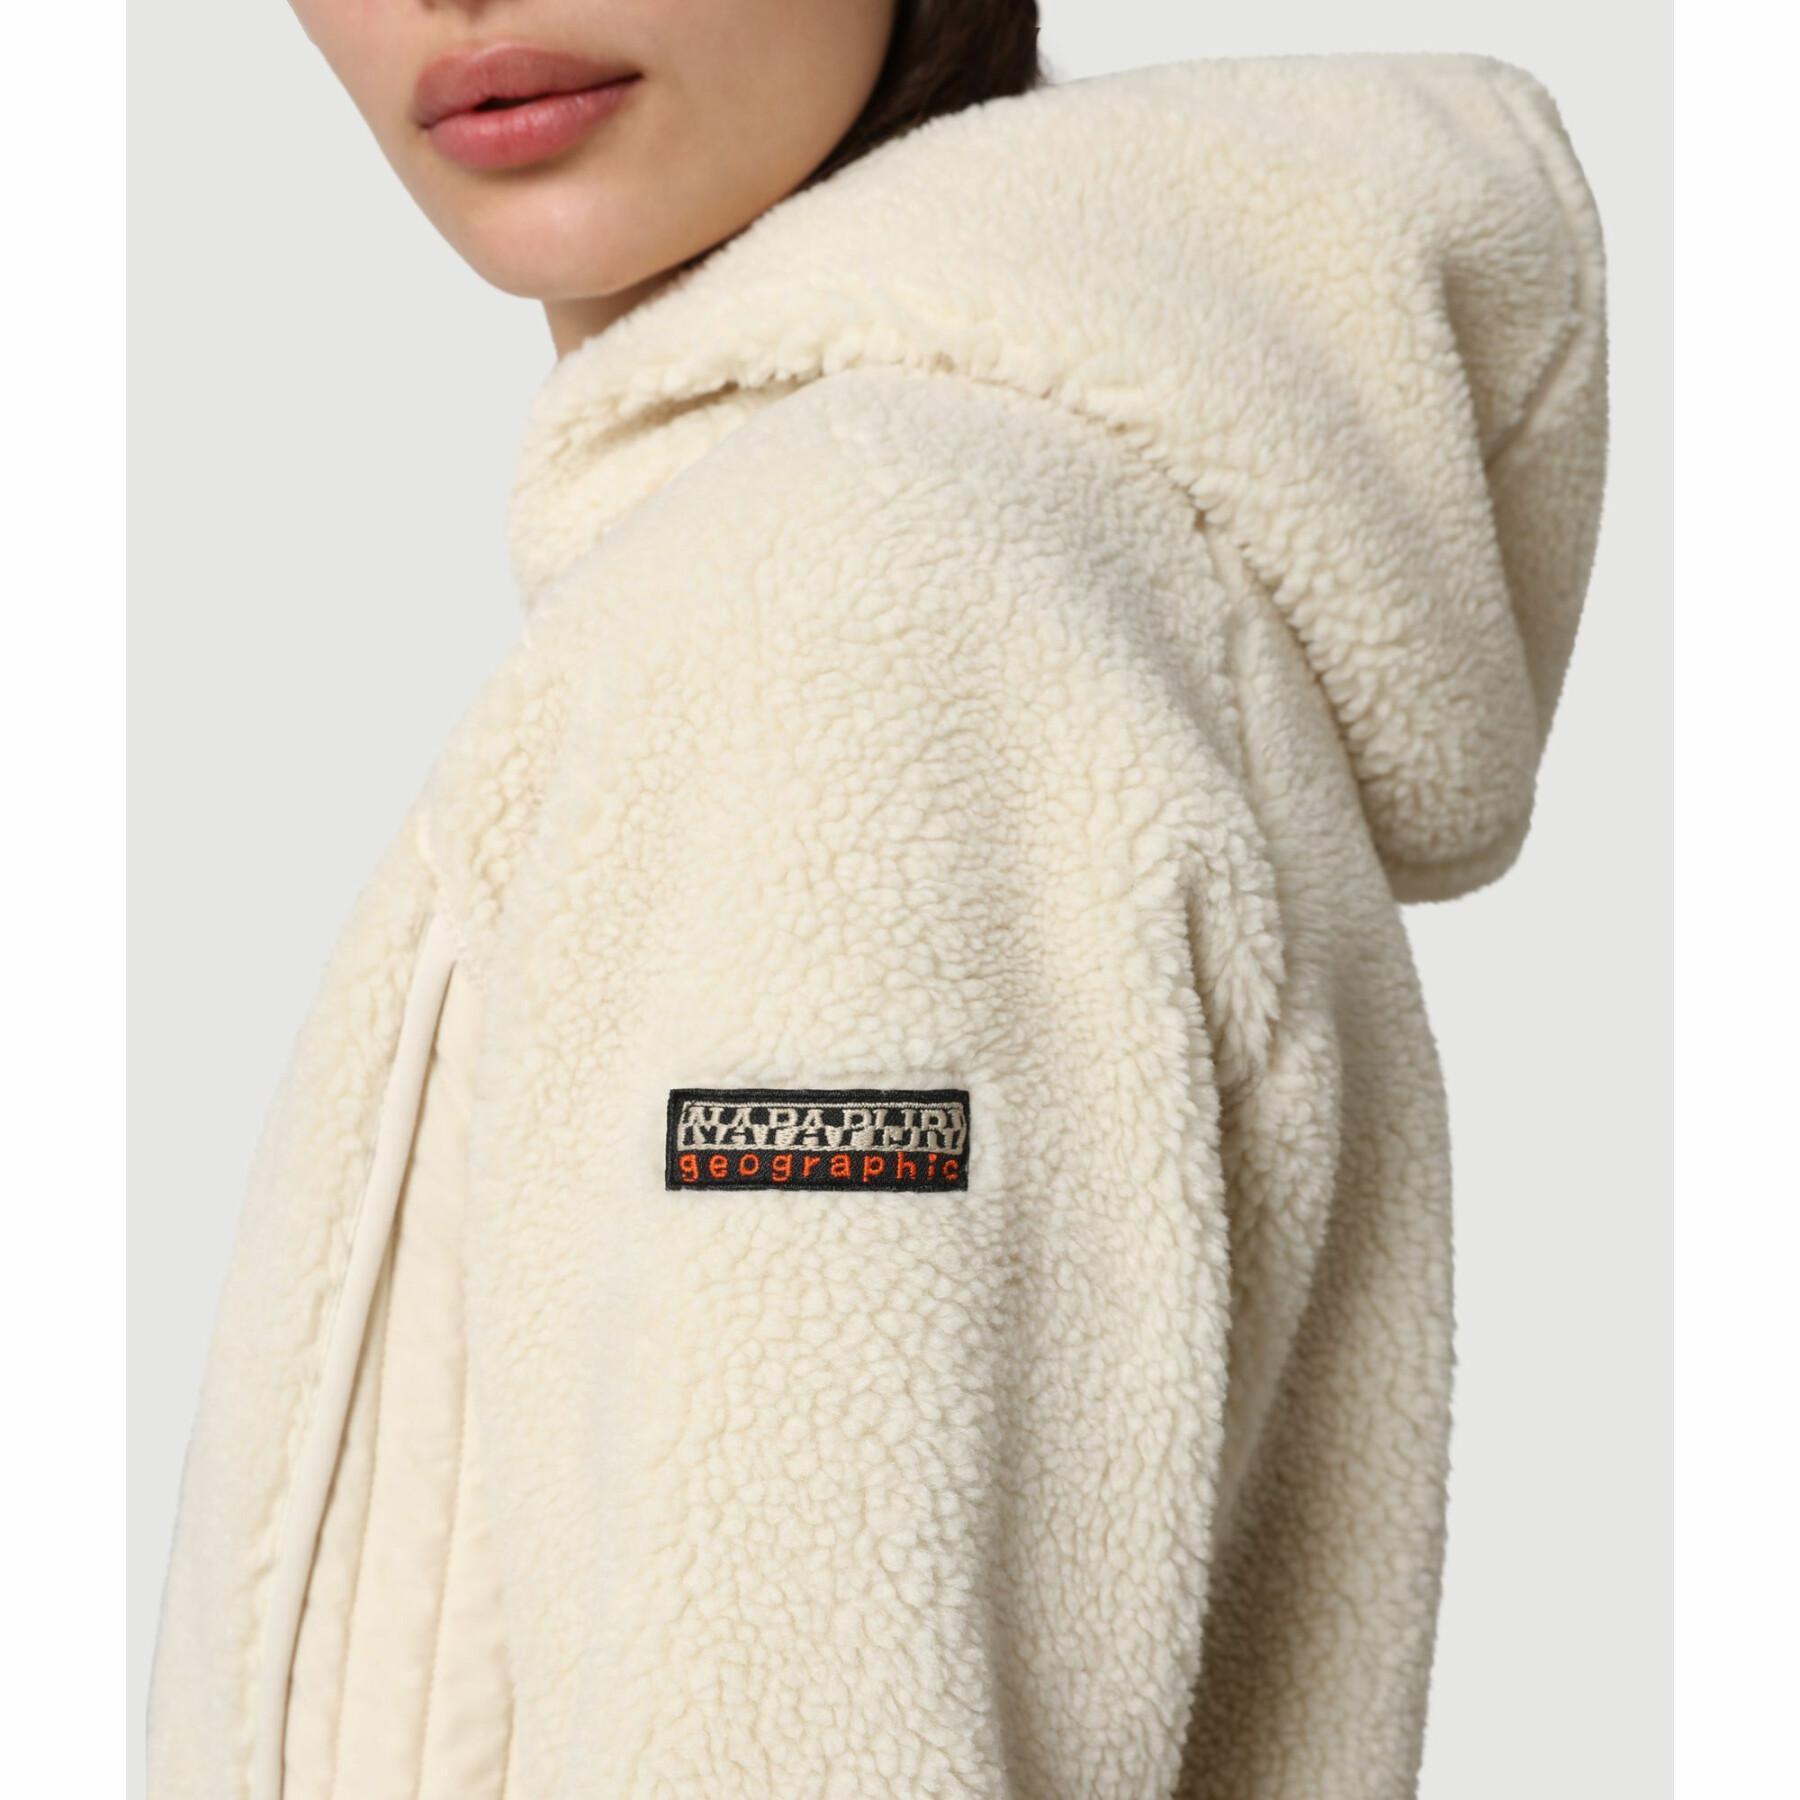 Women's hooded sweatshirt Napapijri yupik